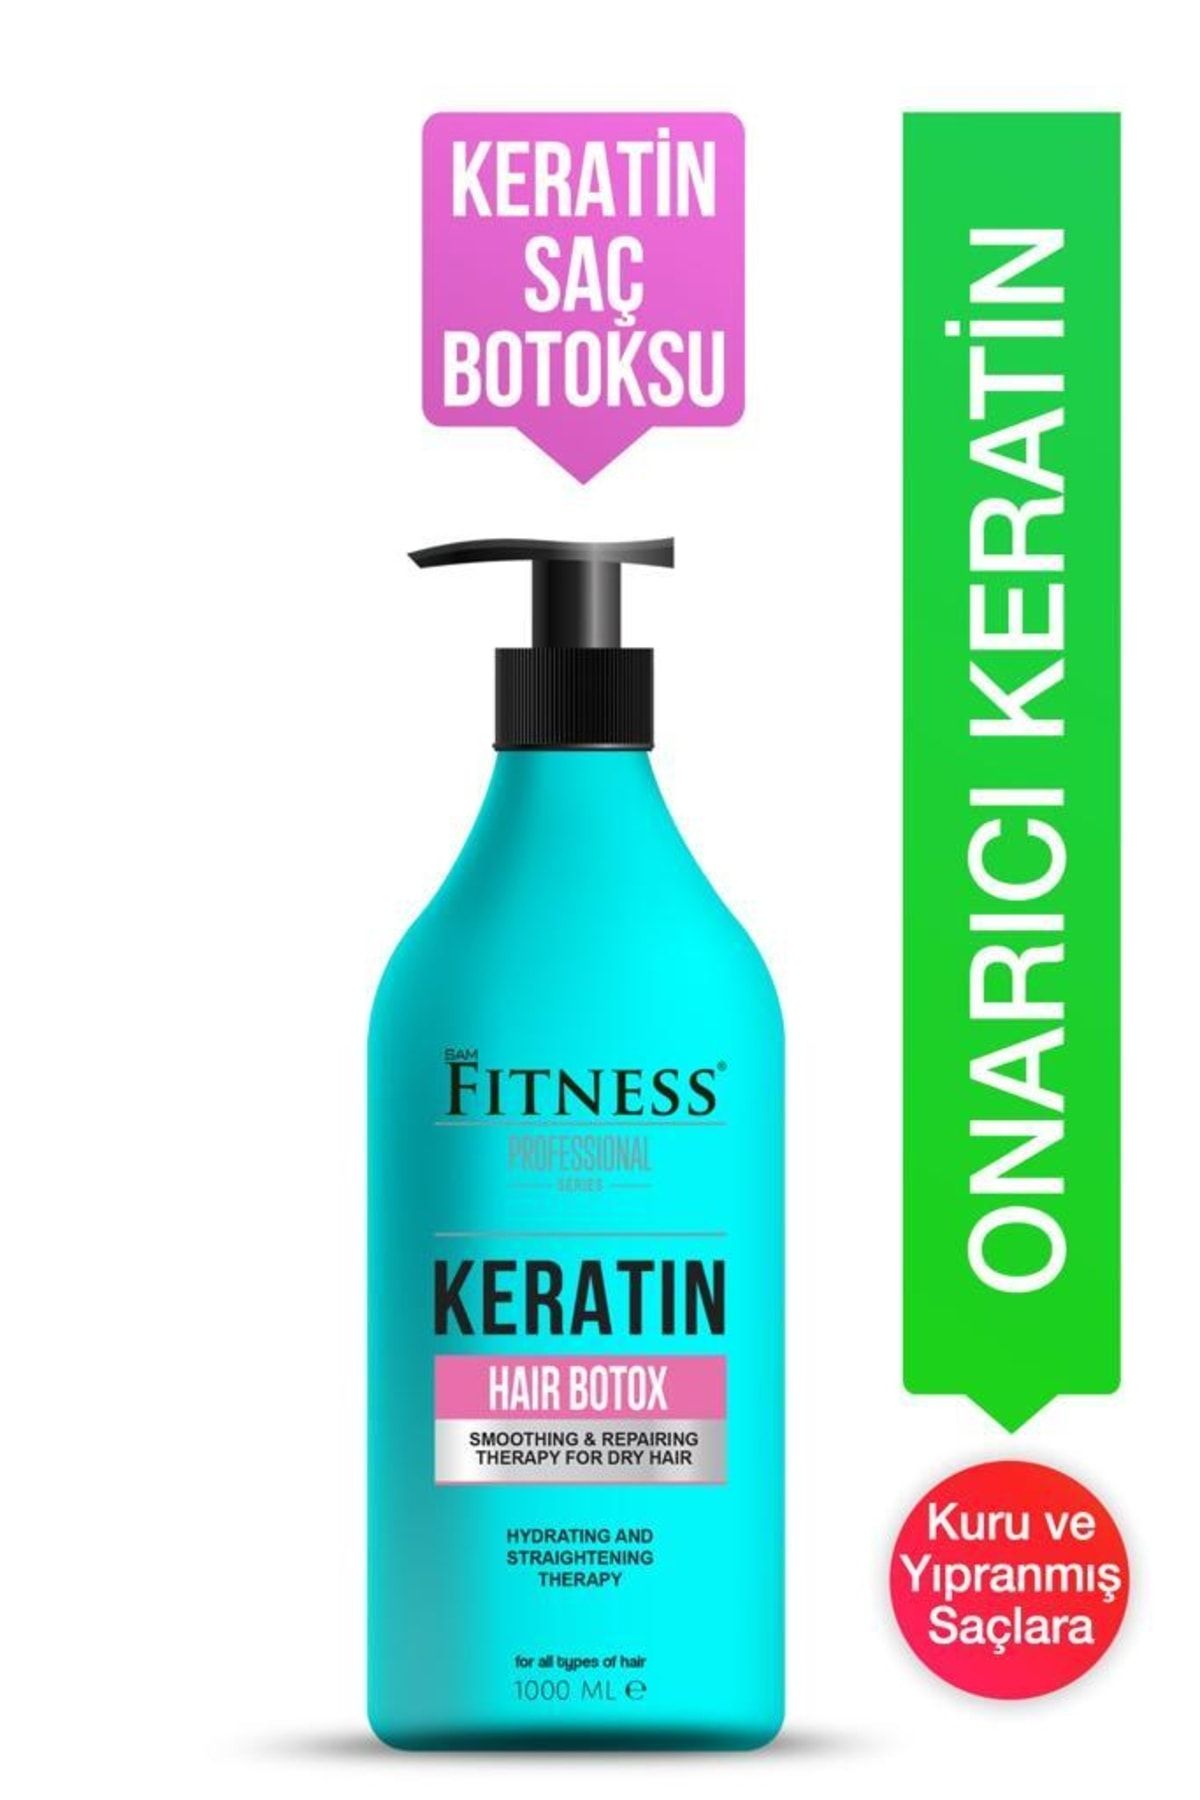 Fitness Professional Yapılandırıcı Onarıcı Yıpranmış Saç Için Detox Etkili Keratin Hair Botox 1000 ml